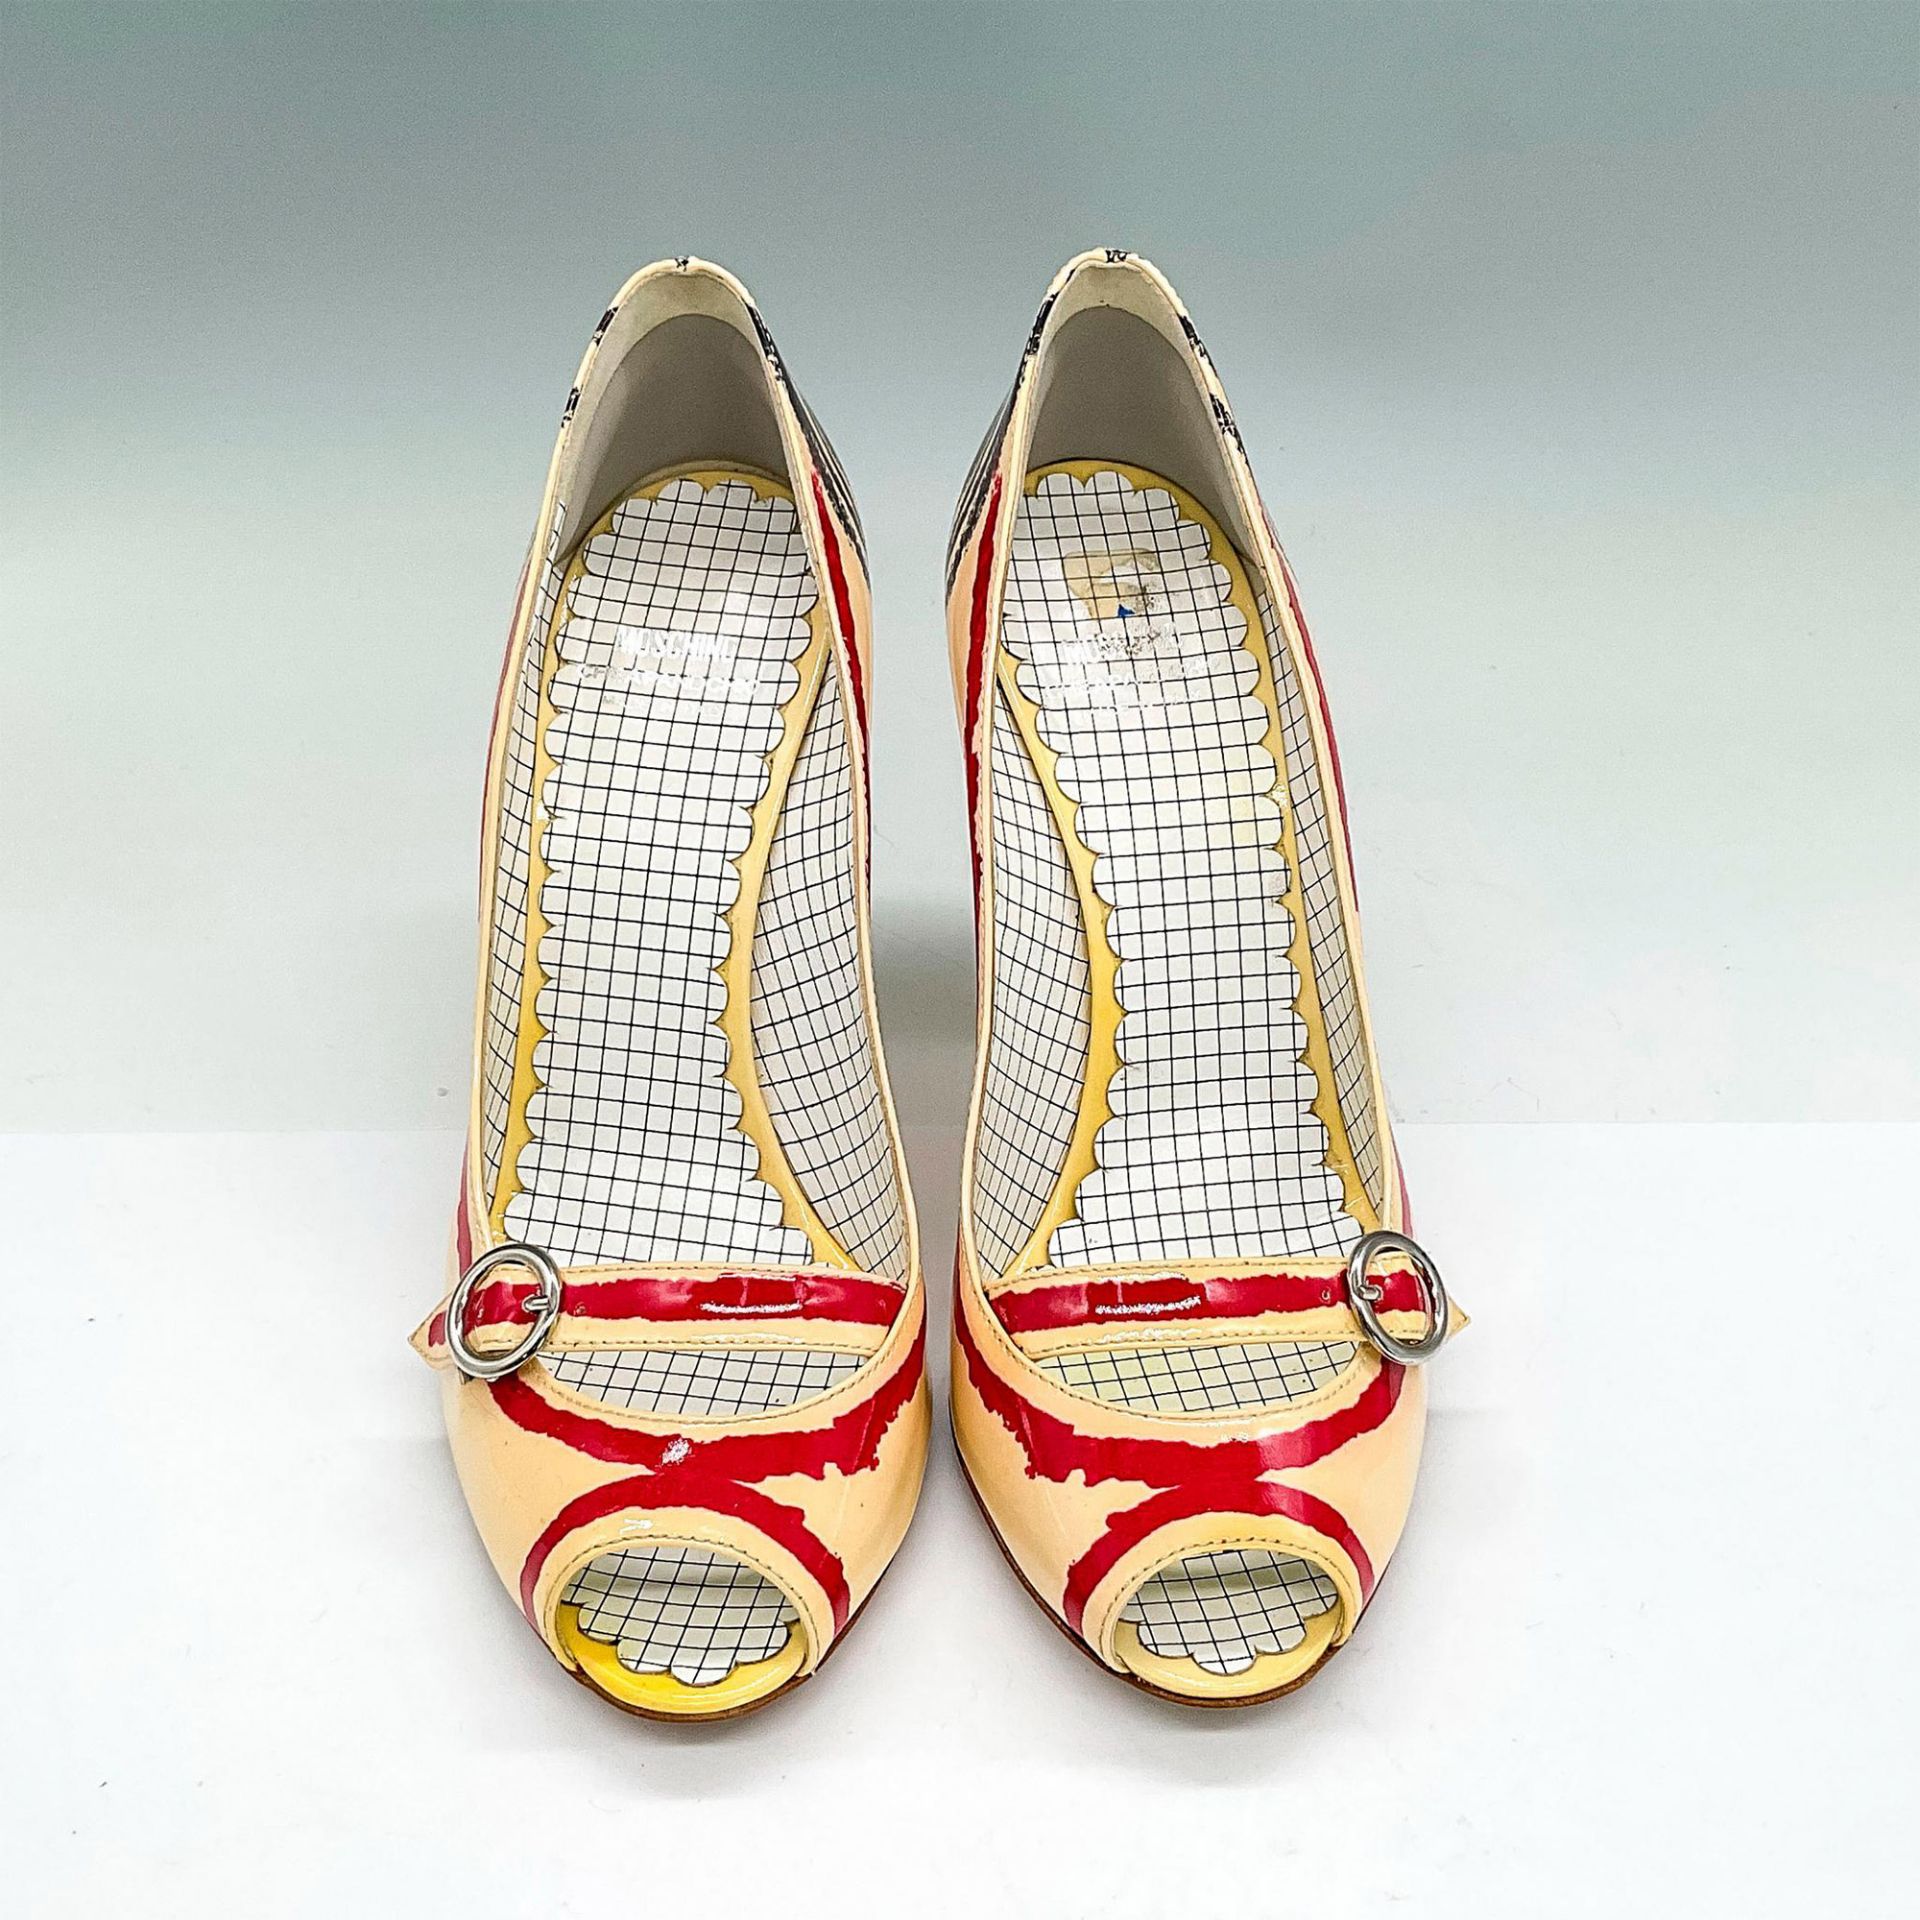 Moschino Open Toe Heels, Cream + Scribble Crayon Red/Navy - Image 2 of 6